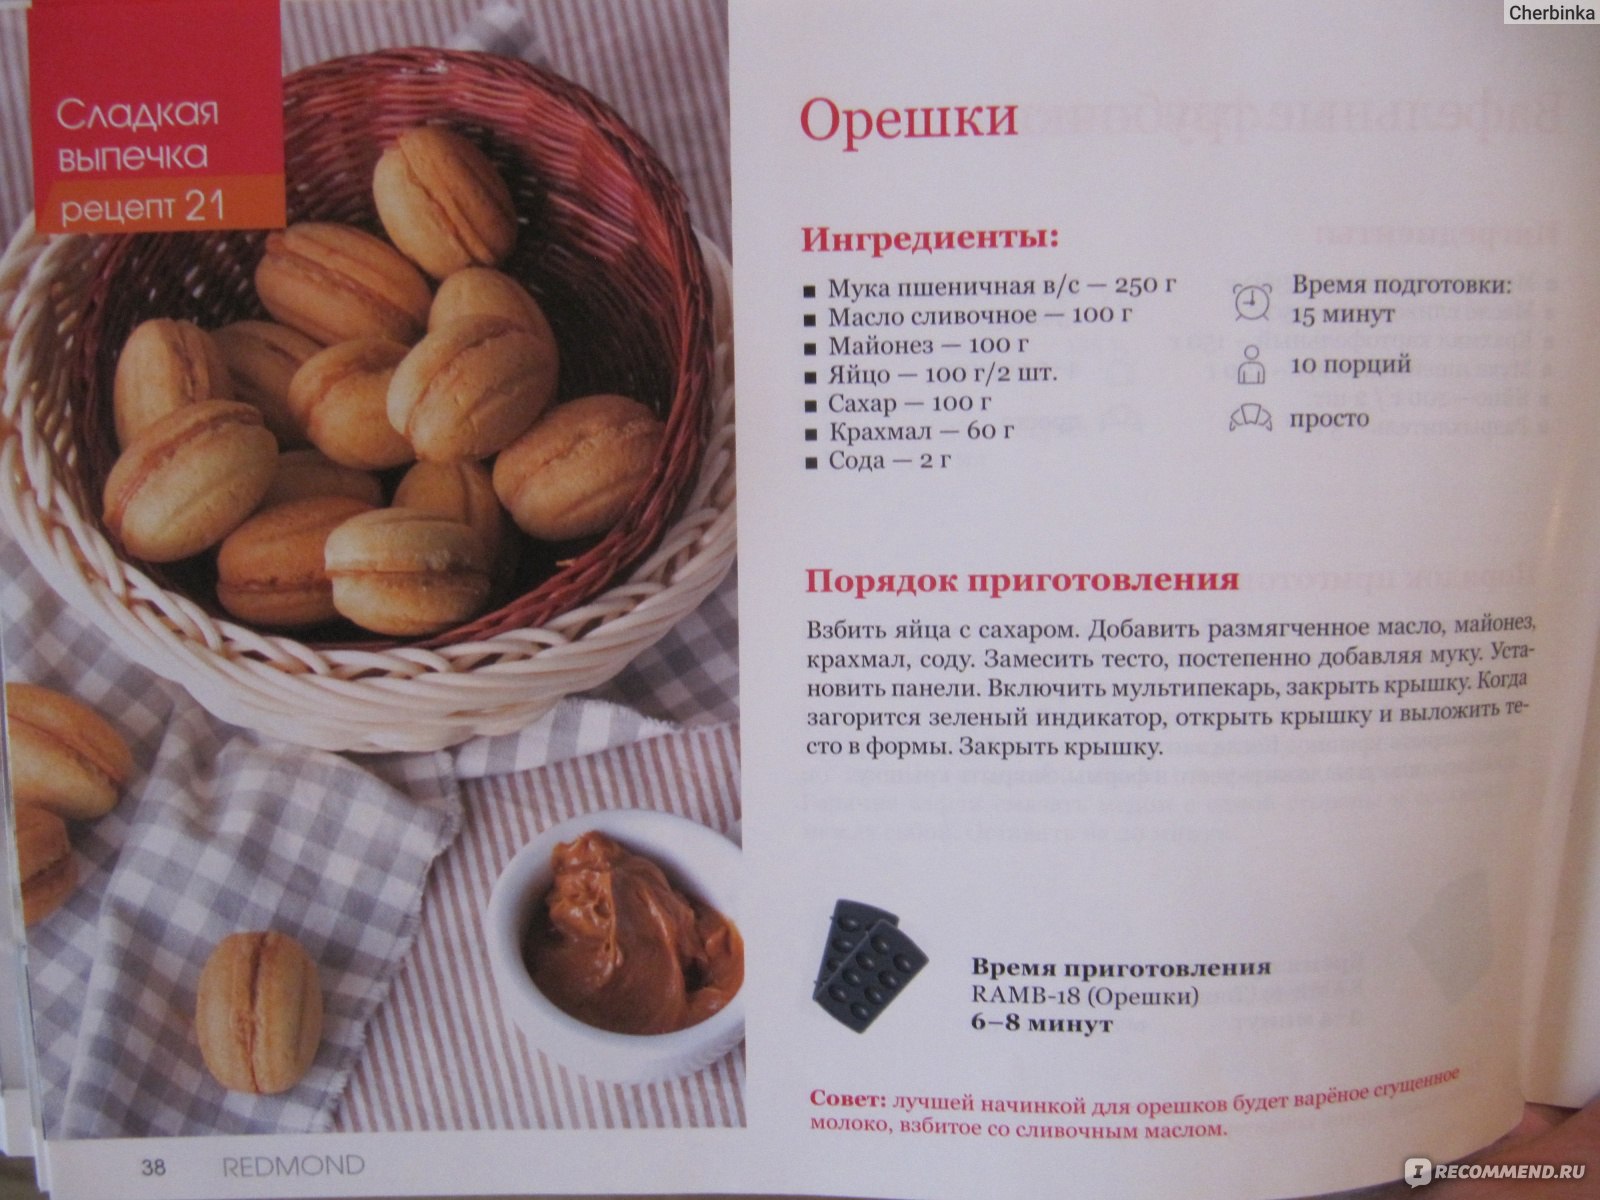 Тесто для орешков в орешнице на газу рецепт как в детстве со сгущенкой с фото